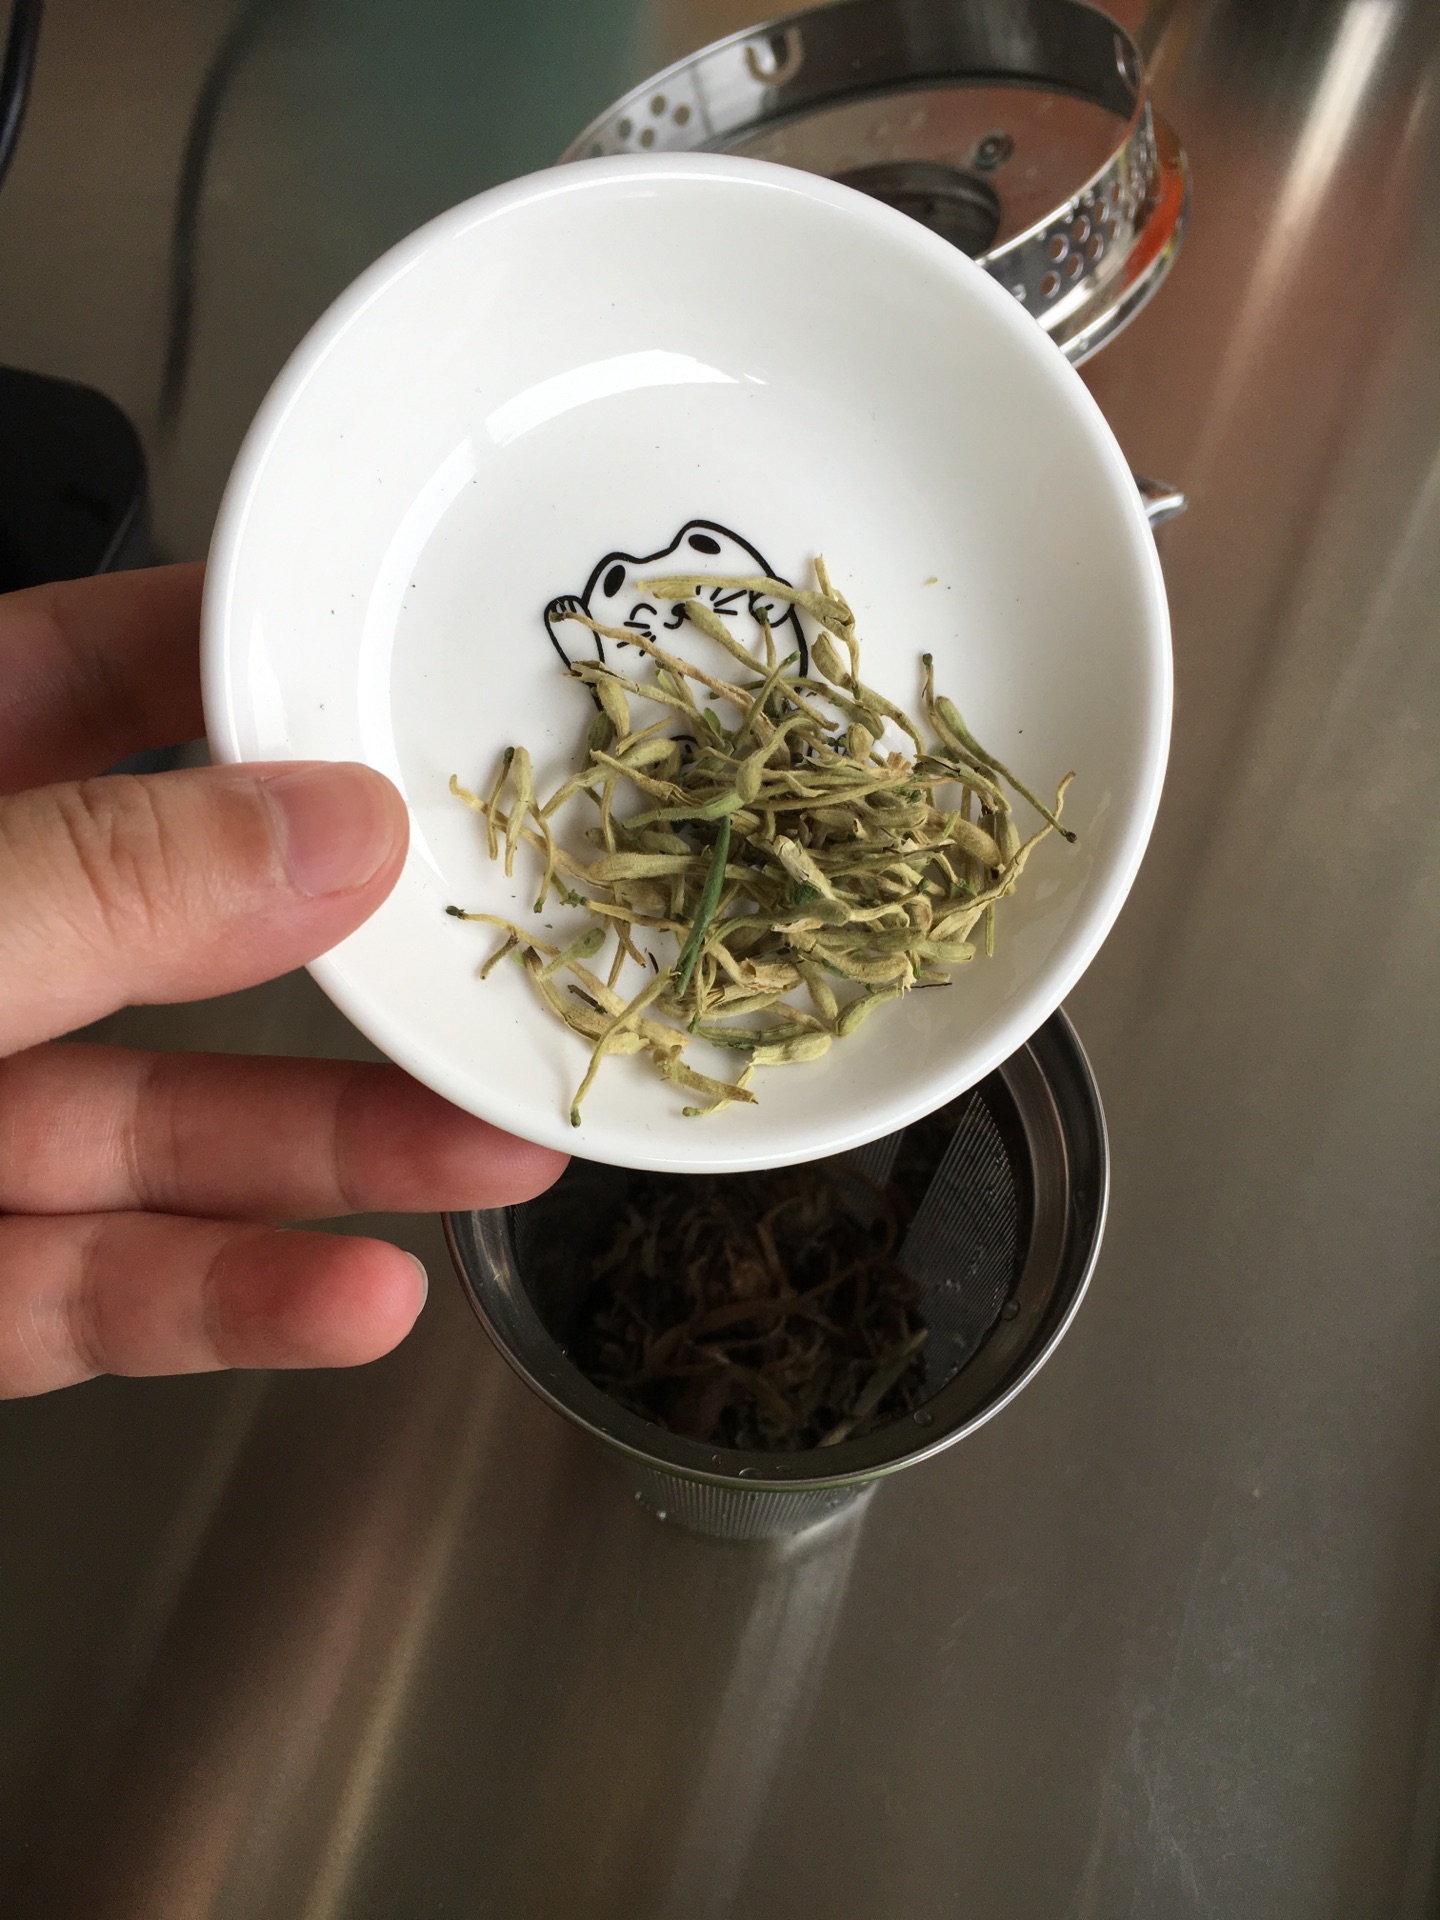 福建仙草凉粉草 0.5kg多规格冻仙草叶 气味清香仙草凉茶原料批发-阿里巴巴